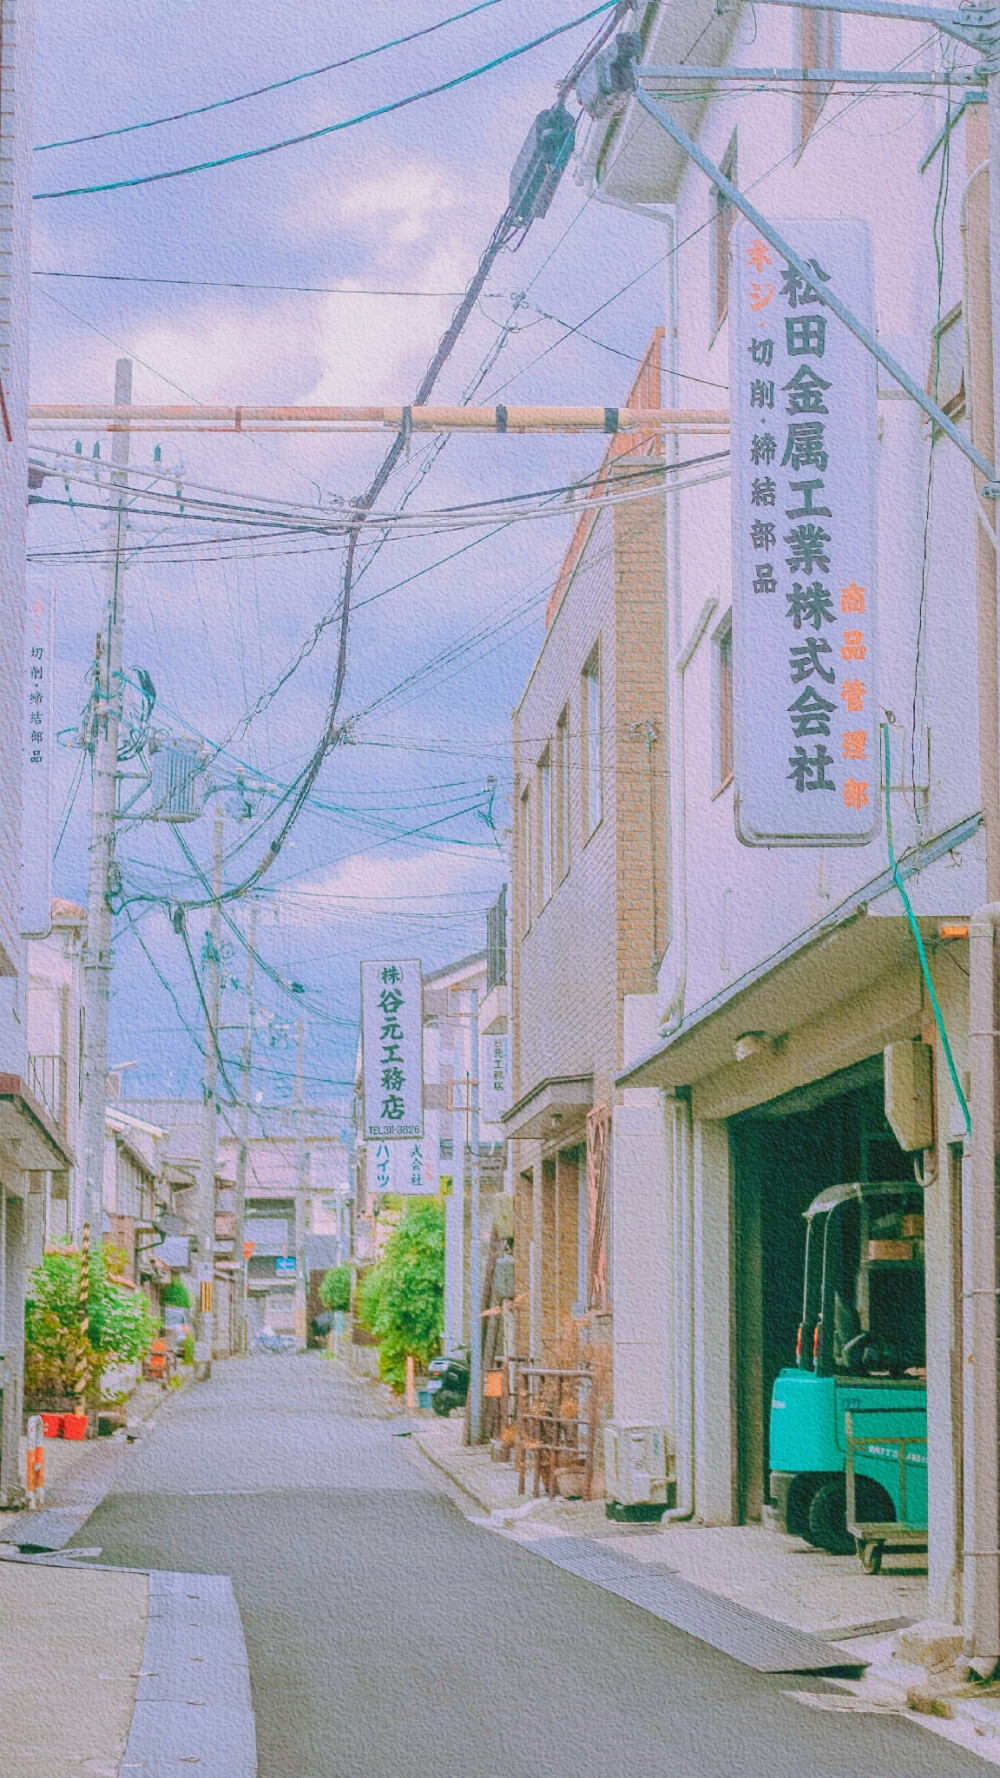 日系街道风景